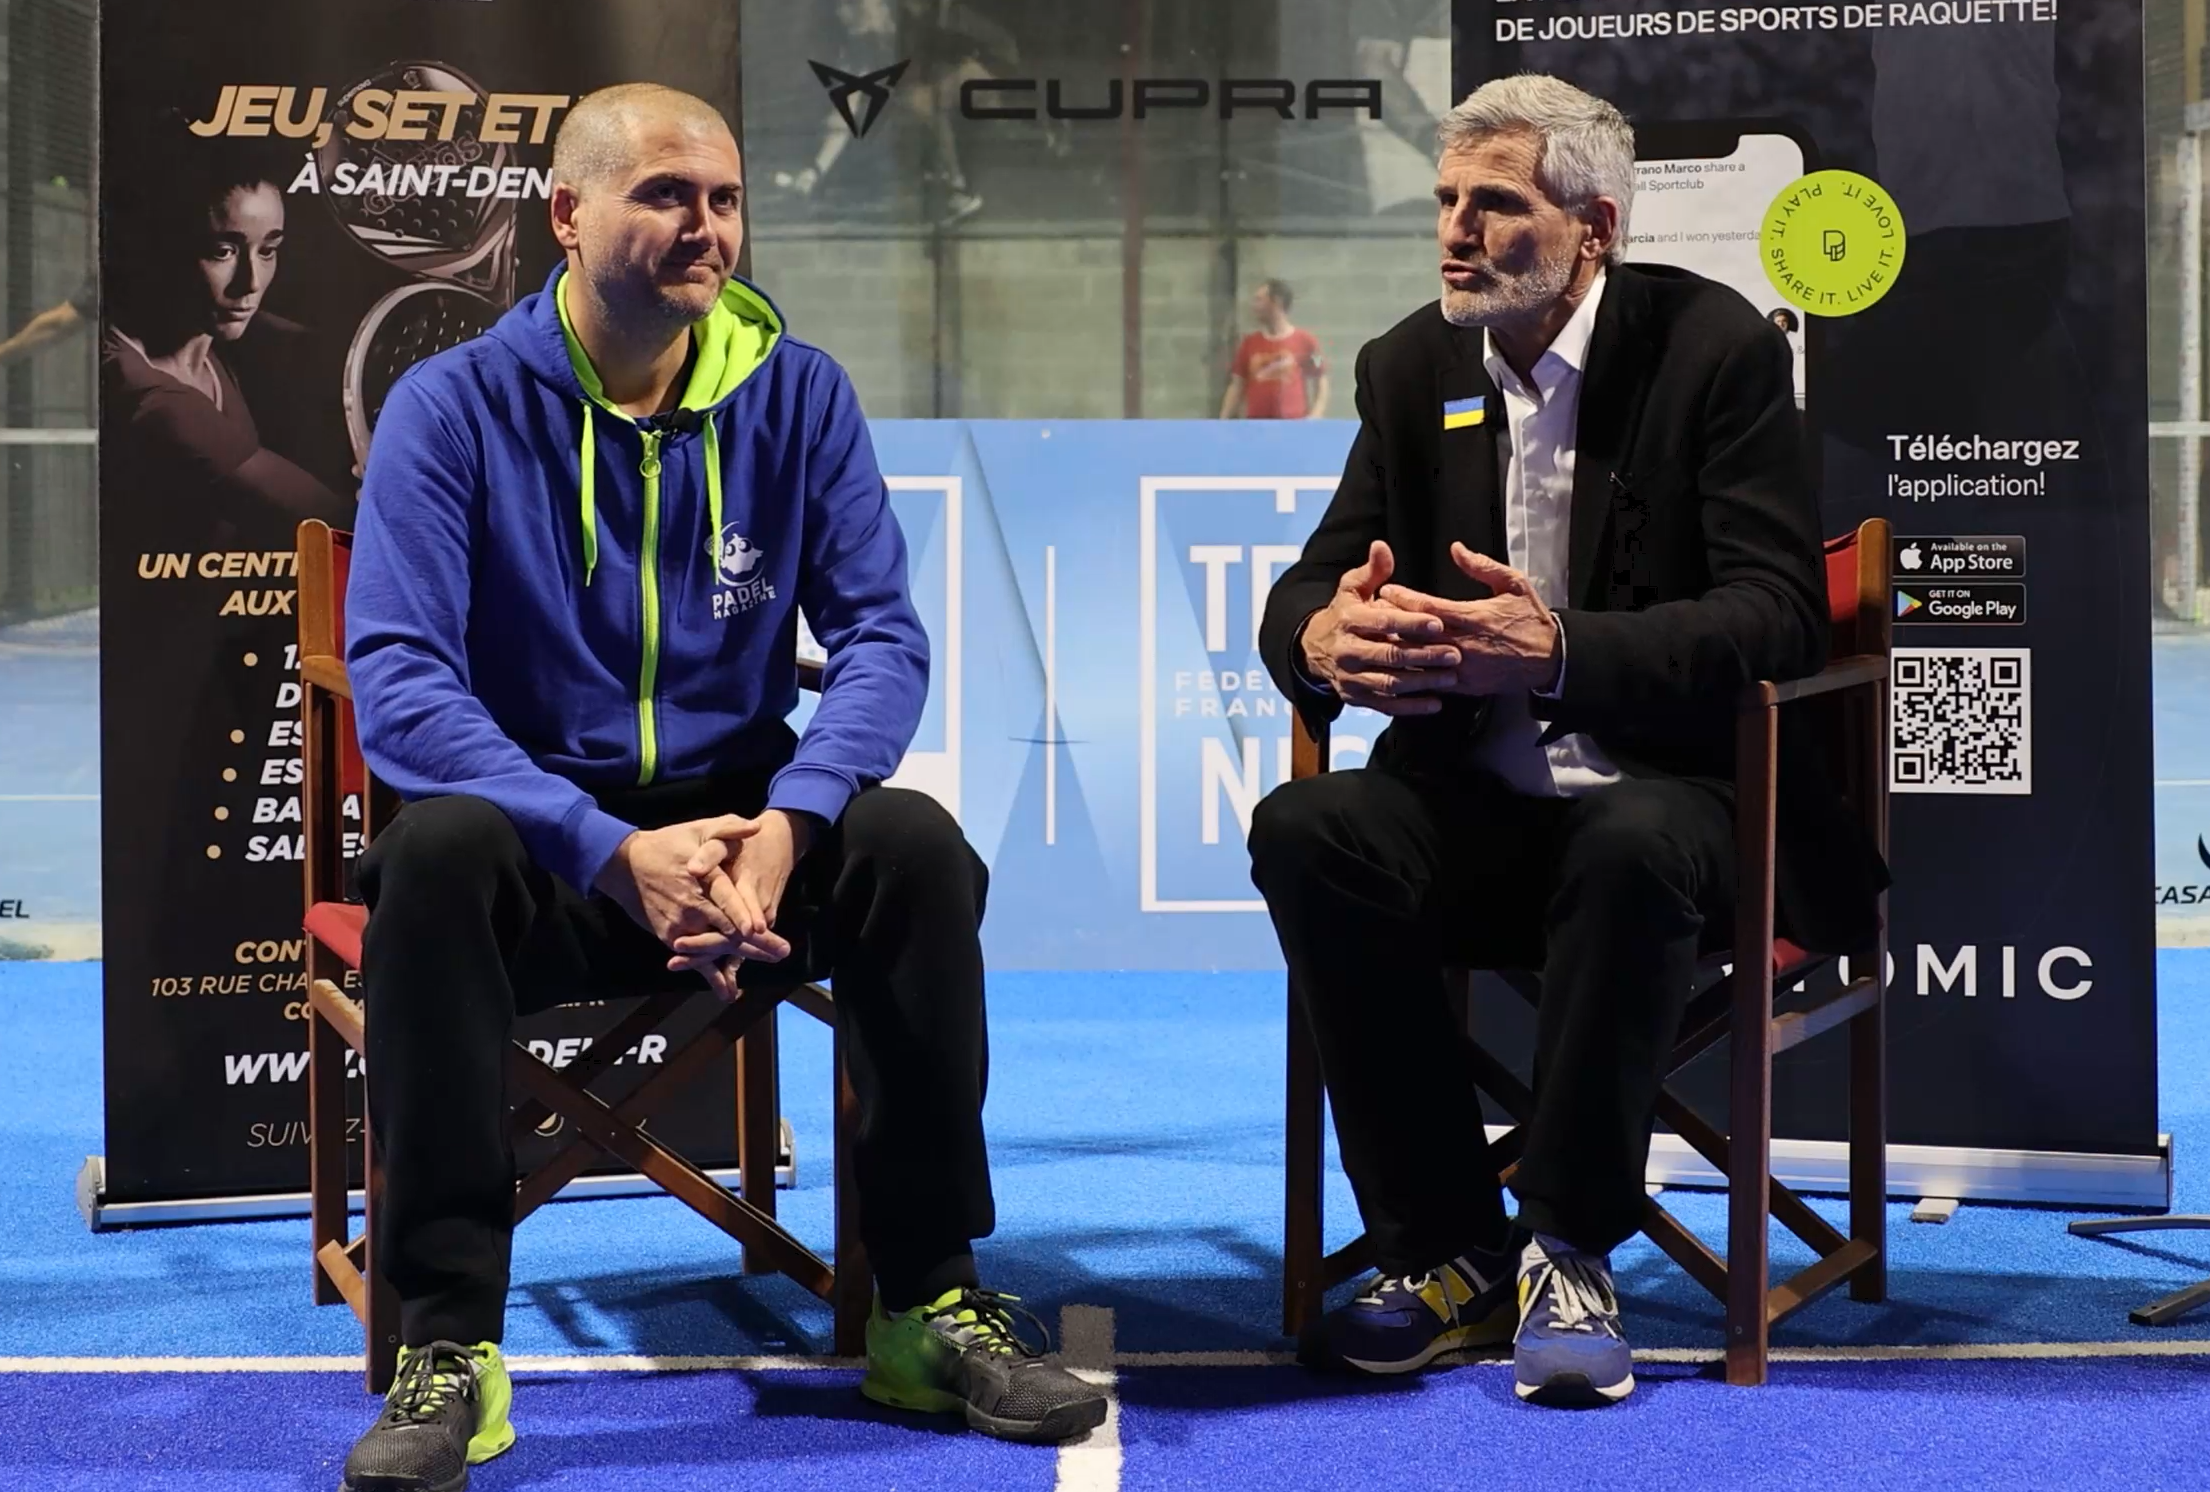 Gilles Moretton – Roland-Garros, professionalizzazione e sviluppo di padel